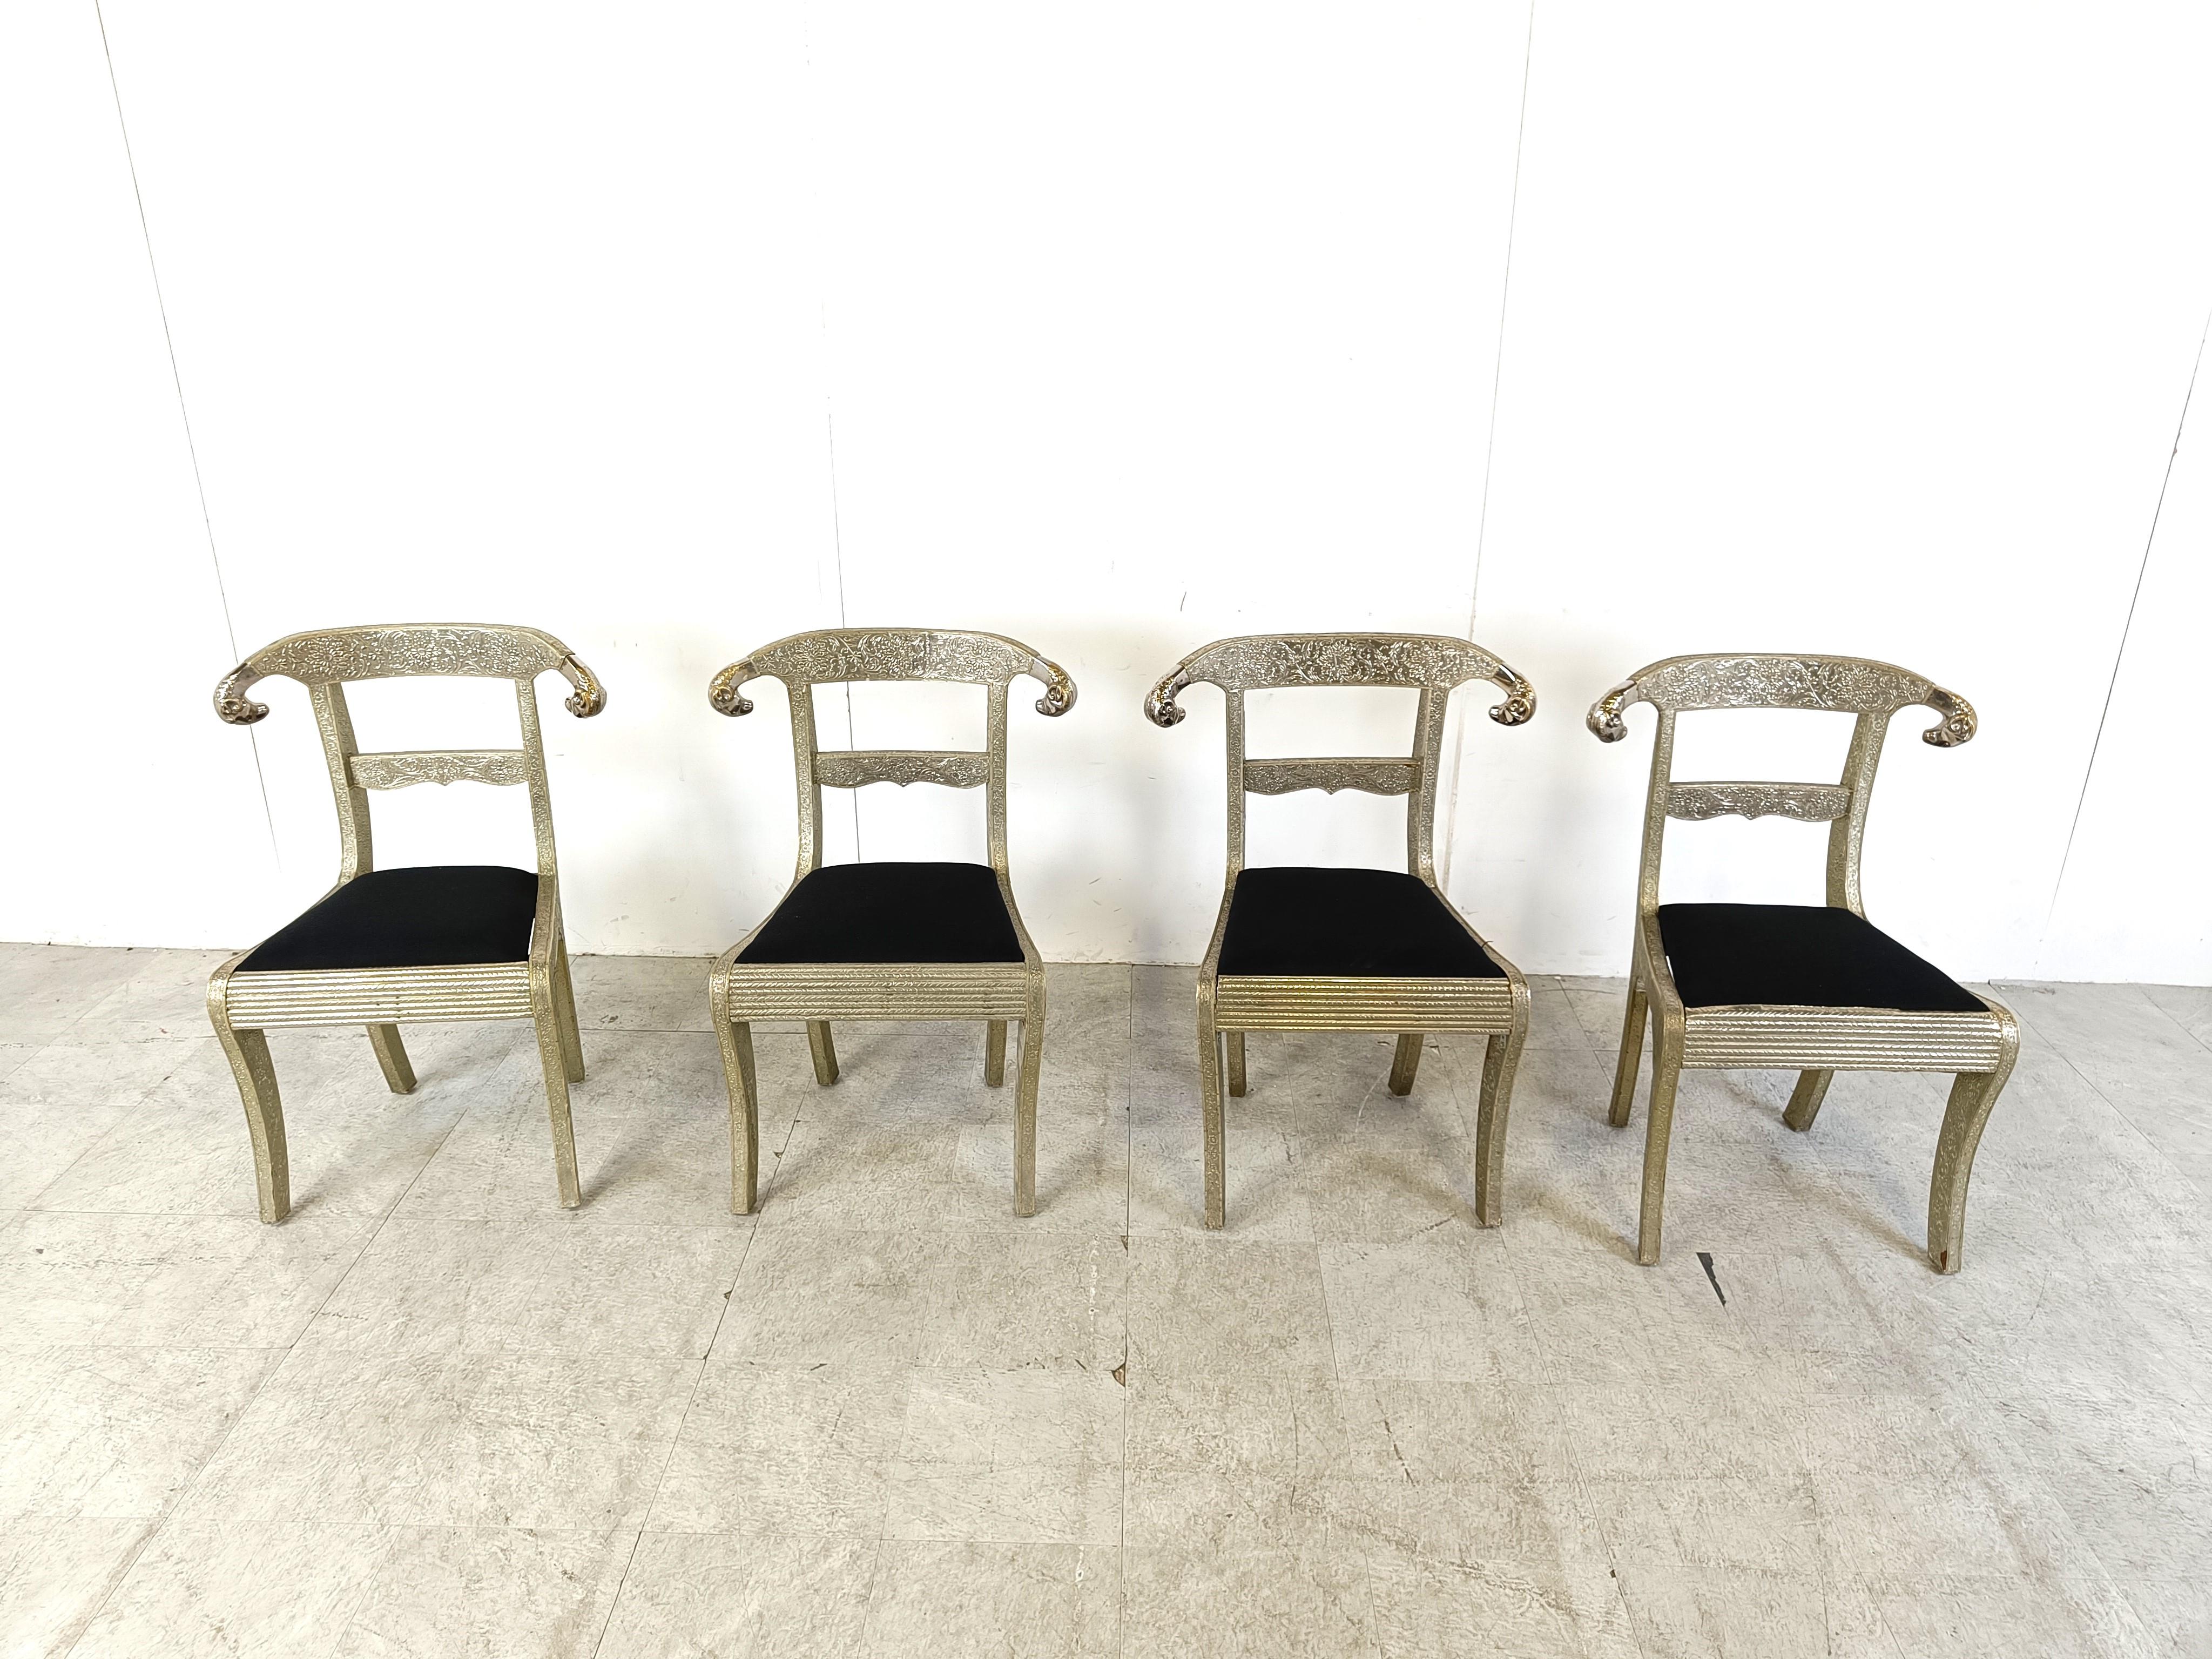 Satz von 4 exquisiten anglo-indischen Stühlen.

Diese bemerkenswerten Stühle sind auch als indische Mitgiftstühle für Hochzeiten bekannt.

Sie bestehen aus einem Holzrahmen, der mit verziertem versilbertem Metall und zwei Widderköpfen bedeckt